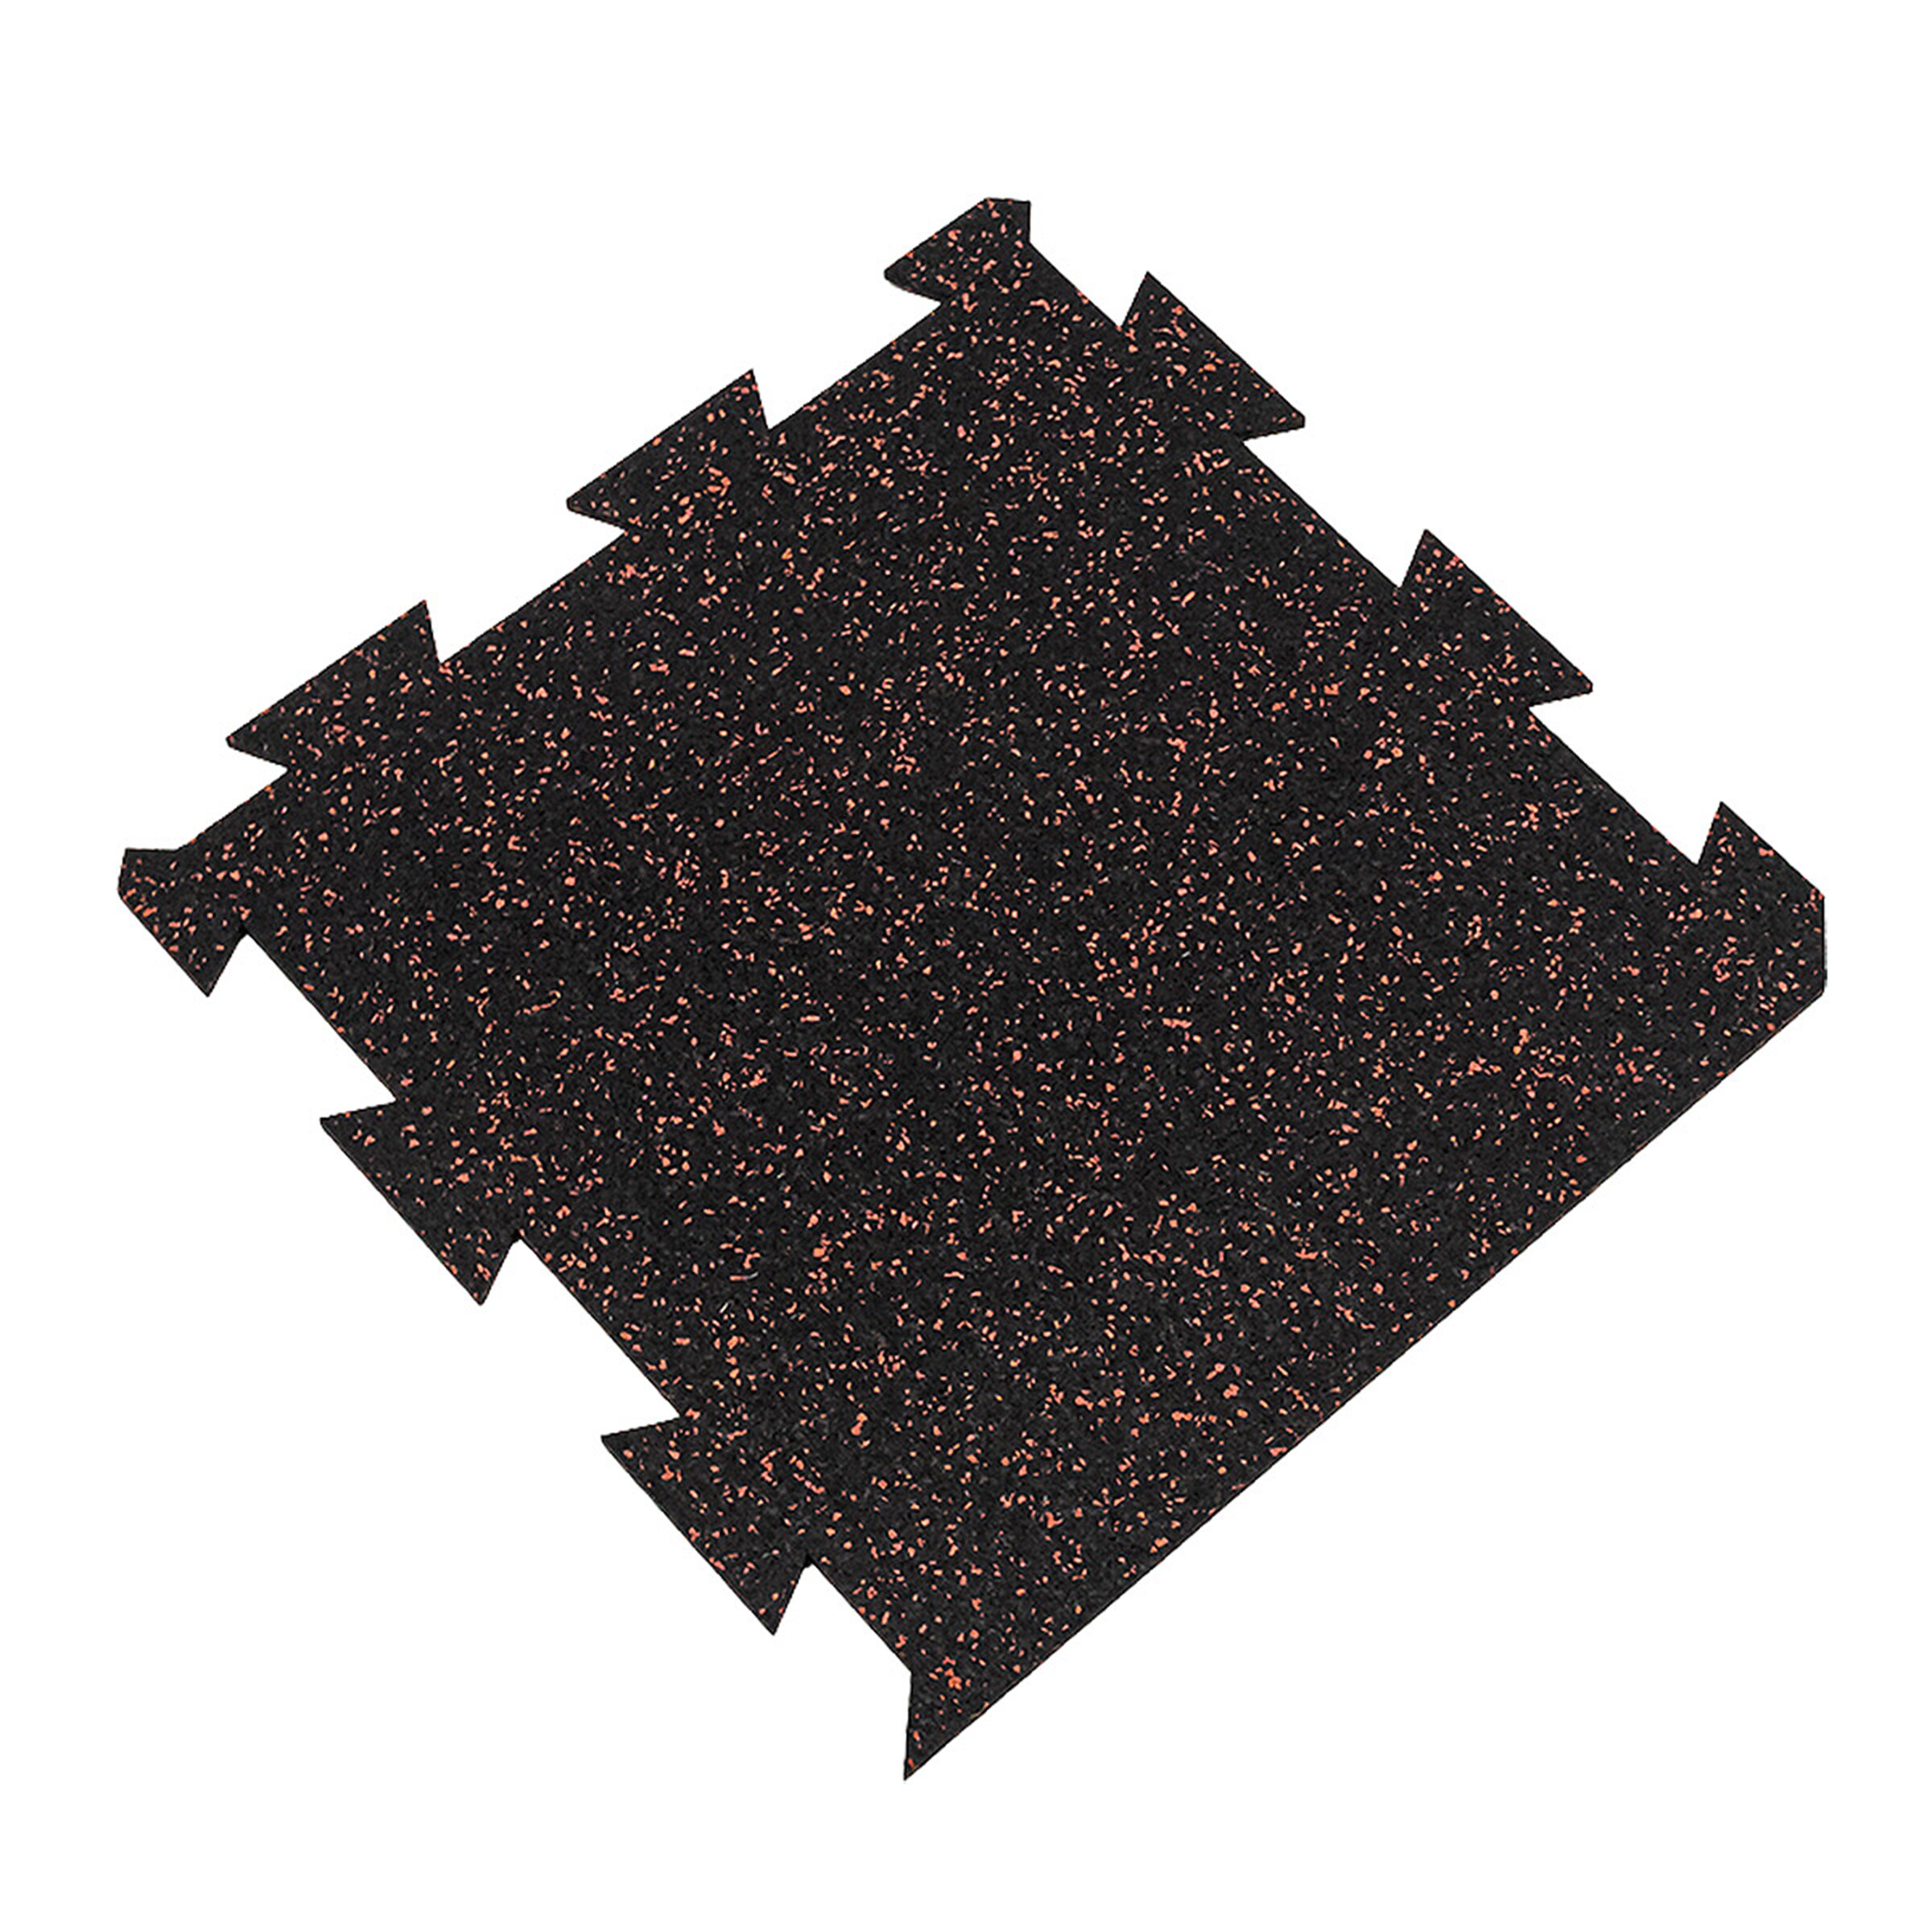 Čierno-červená gumová modulová puzzle dlažba (okraj) FLOMA FitFlo SF1050 - dĺžka 50 cm, šírka 50 cm, výška 1 cm